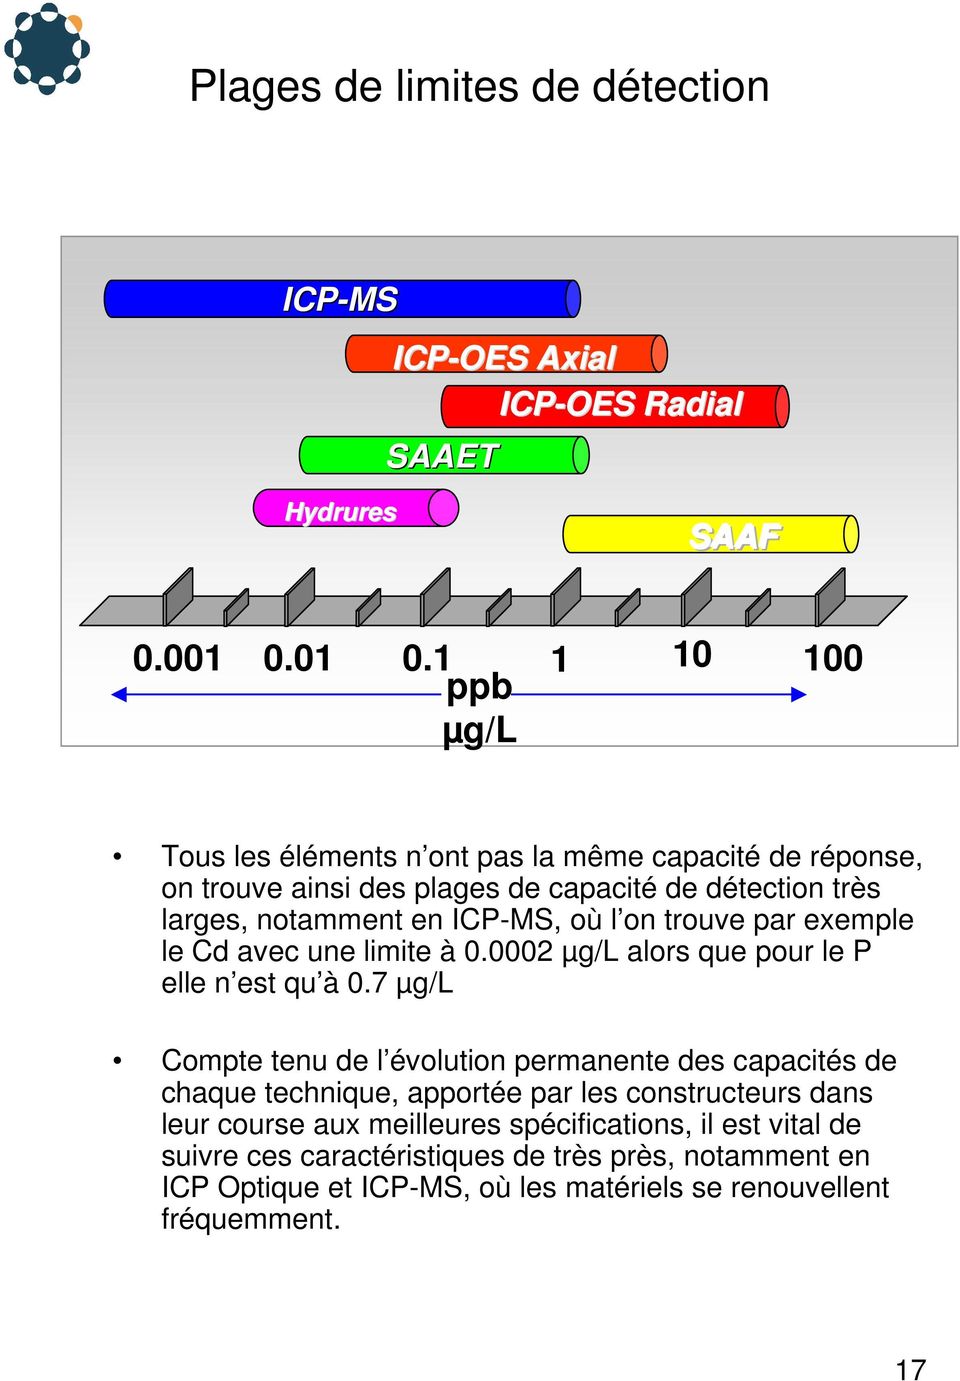 ICP-MS, où l on trouve par exemple le Cd avec une limite à 0.0002 µg/l alors que pour le P elle n est qu à 0.